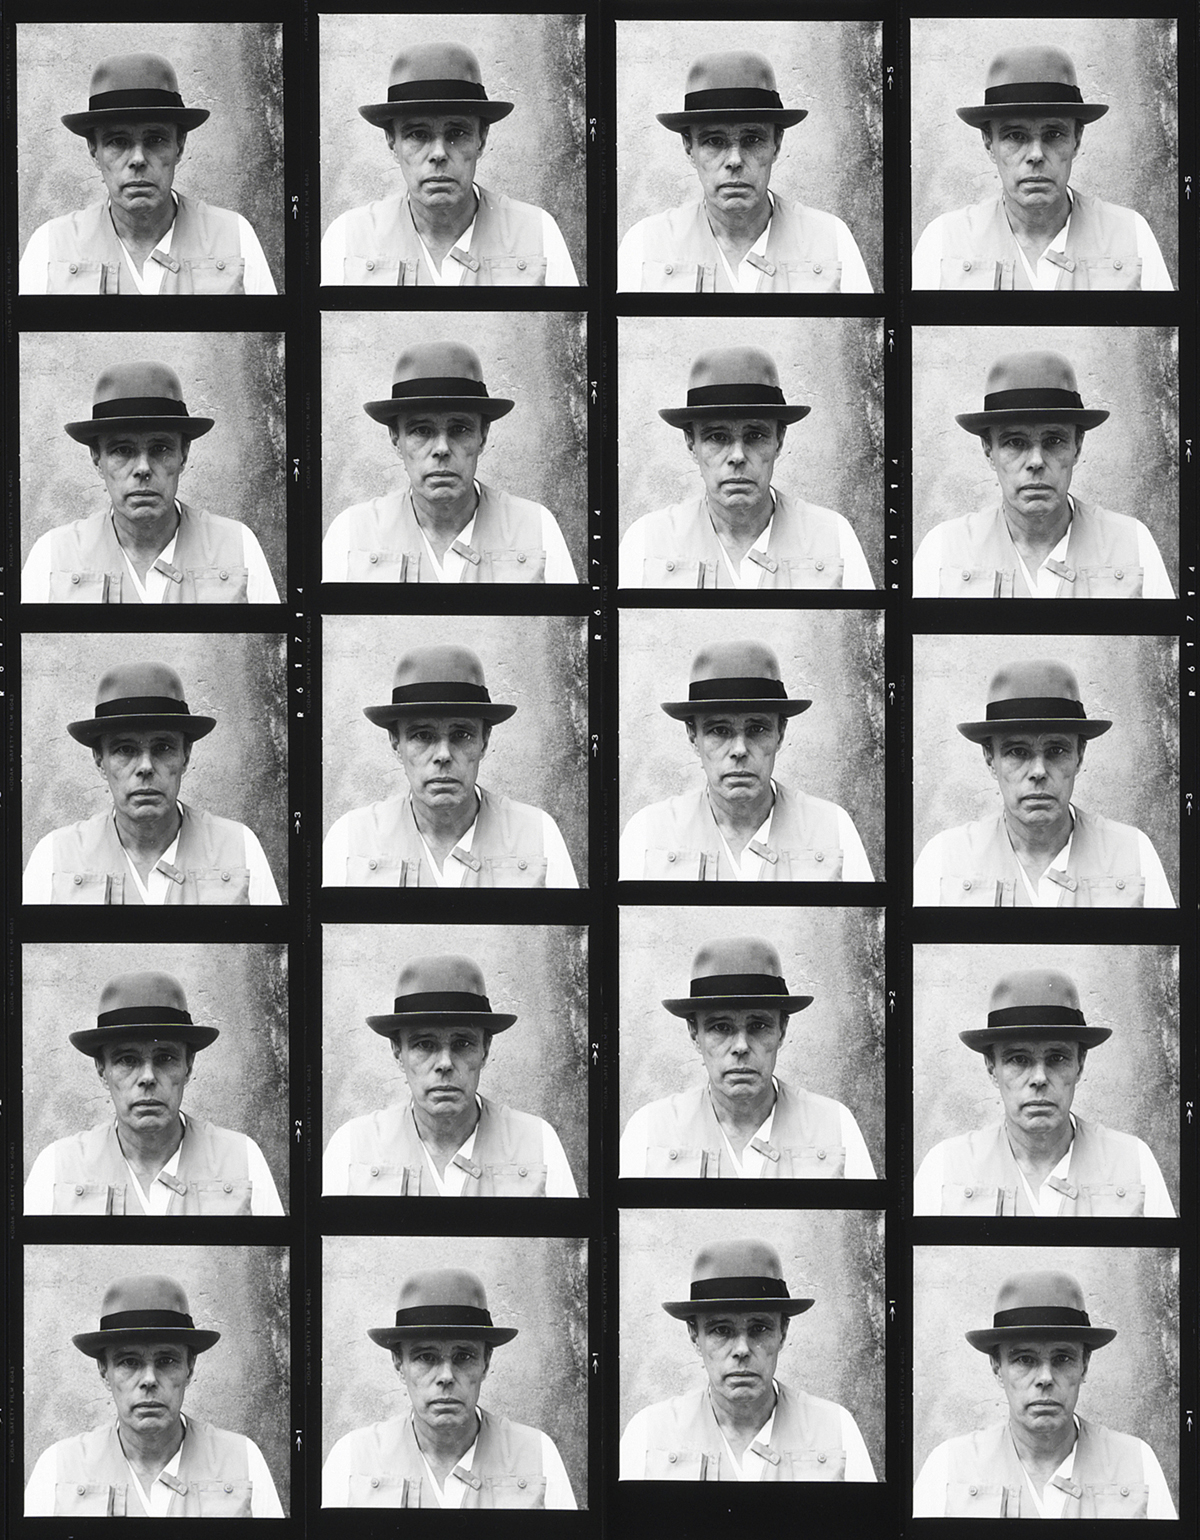 Joseph Beuys, 100 Frontal Views